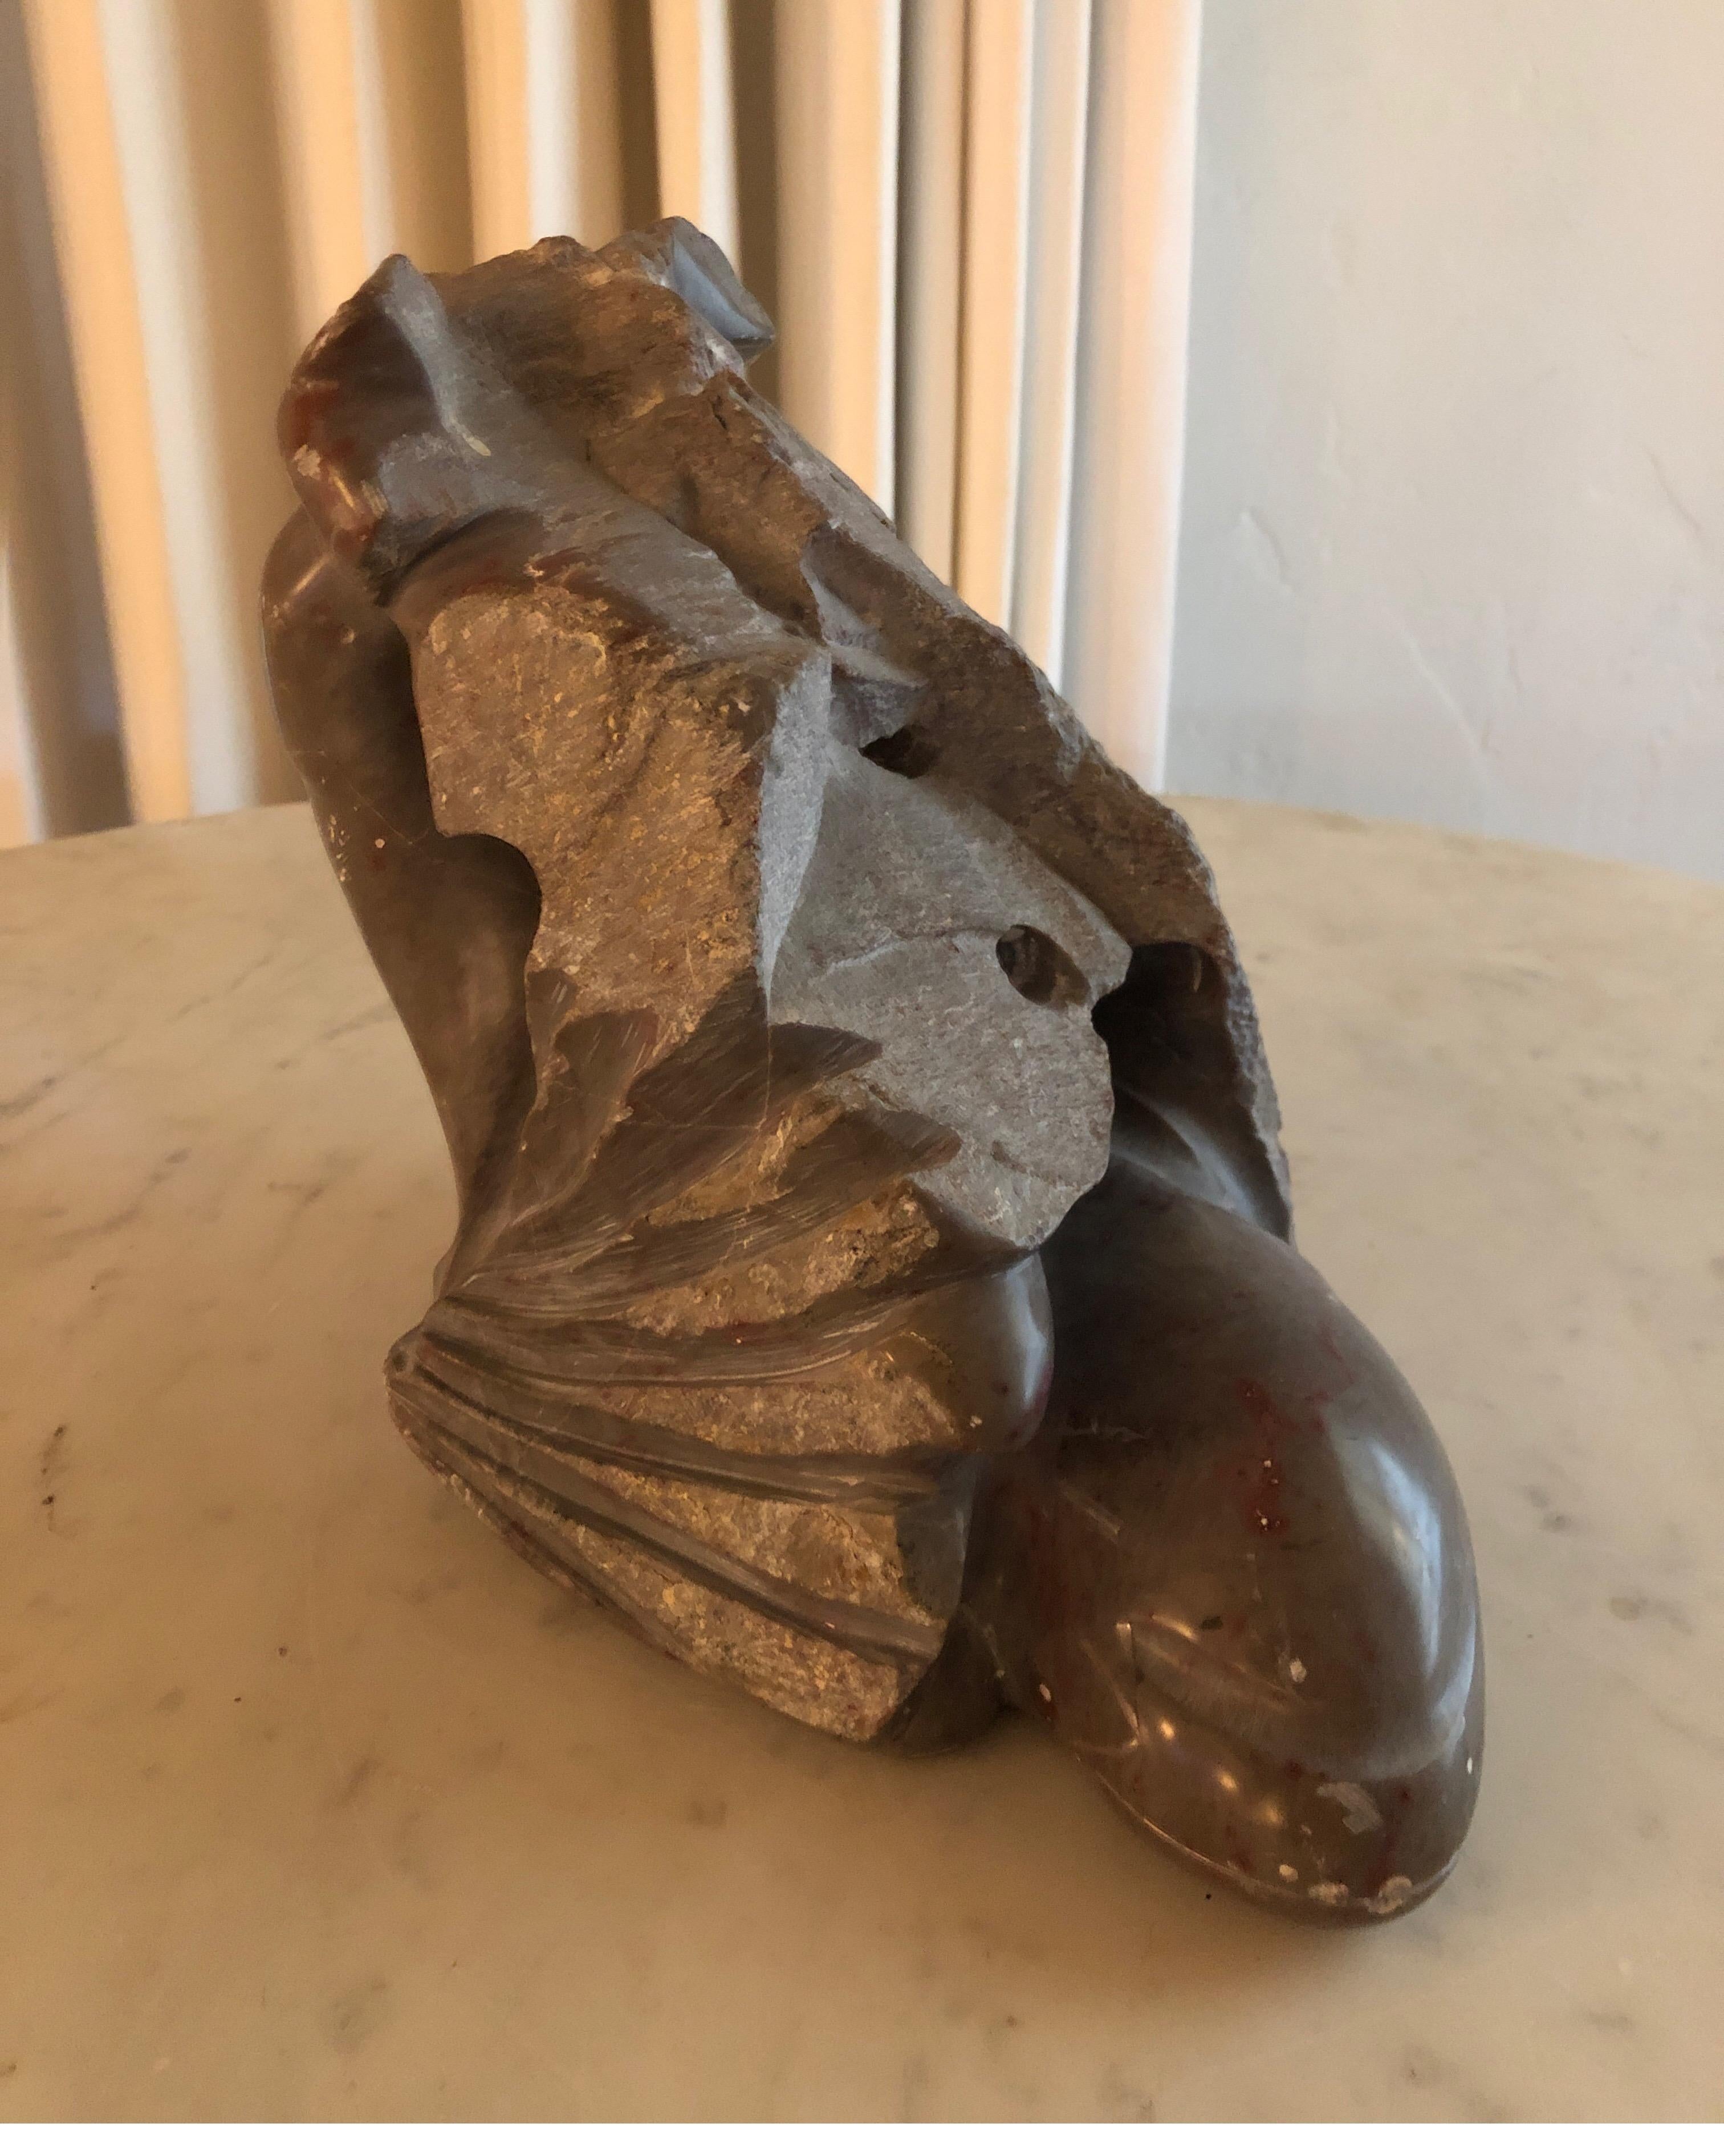 Modernistische Skulptur, signiert mit den berüchtigten Herzen des amerikanischen Künstlers Yehuda Dodd Roth.
Grauer behauener Stein mit rötlich-braunen Reflexen.